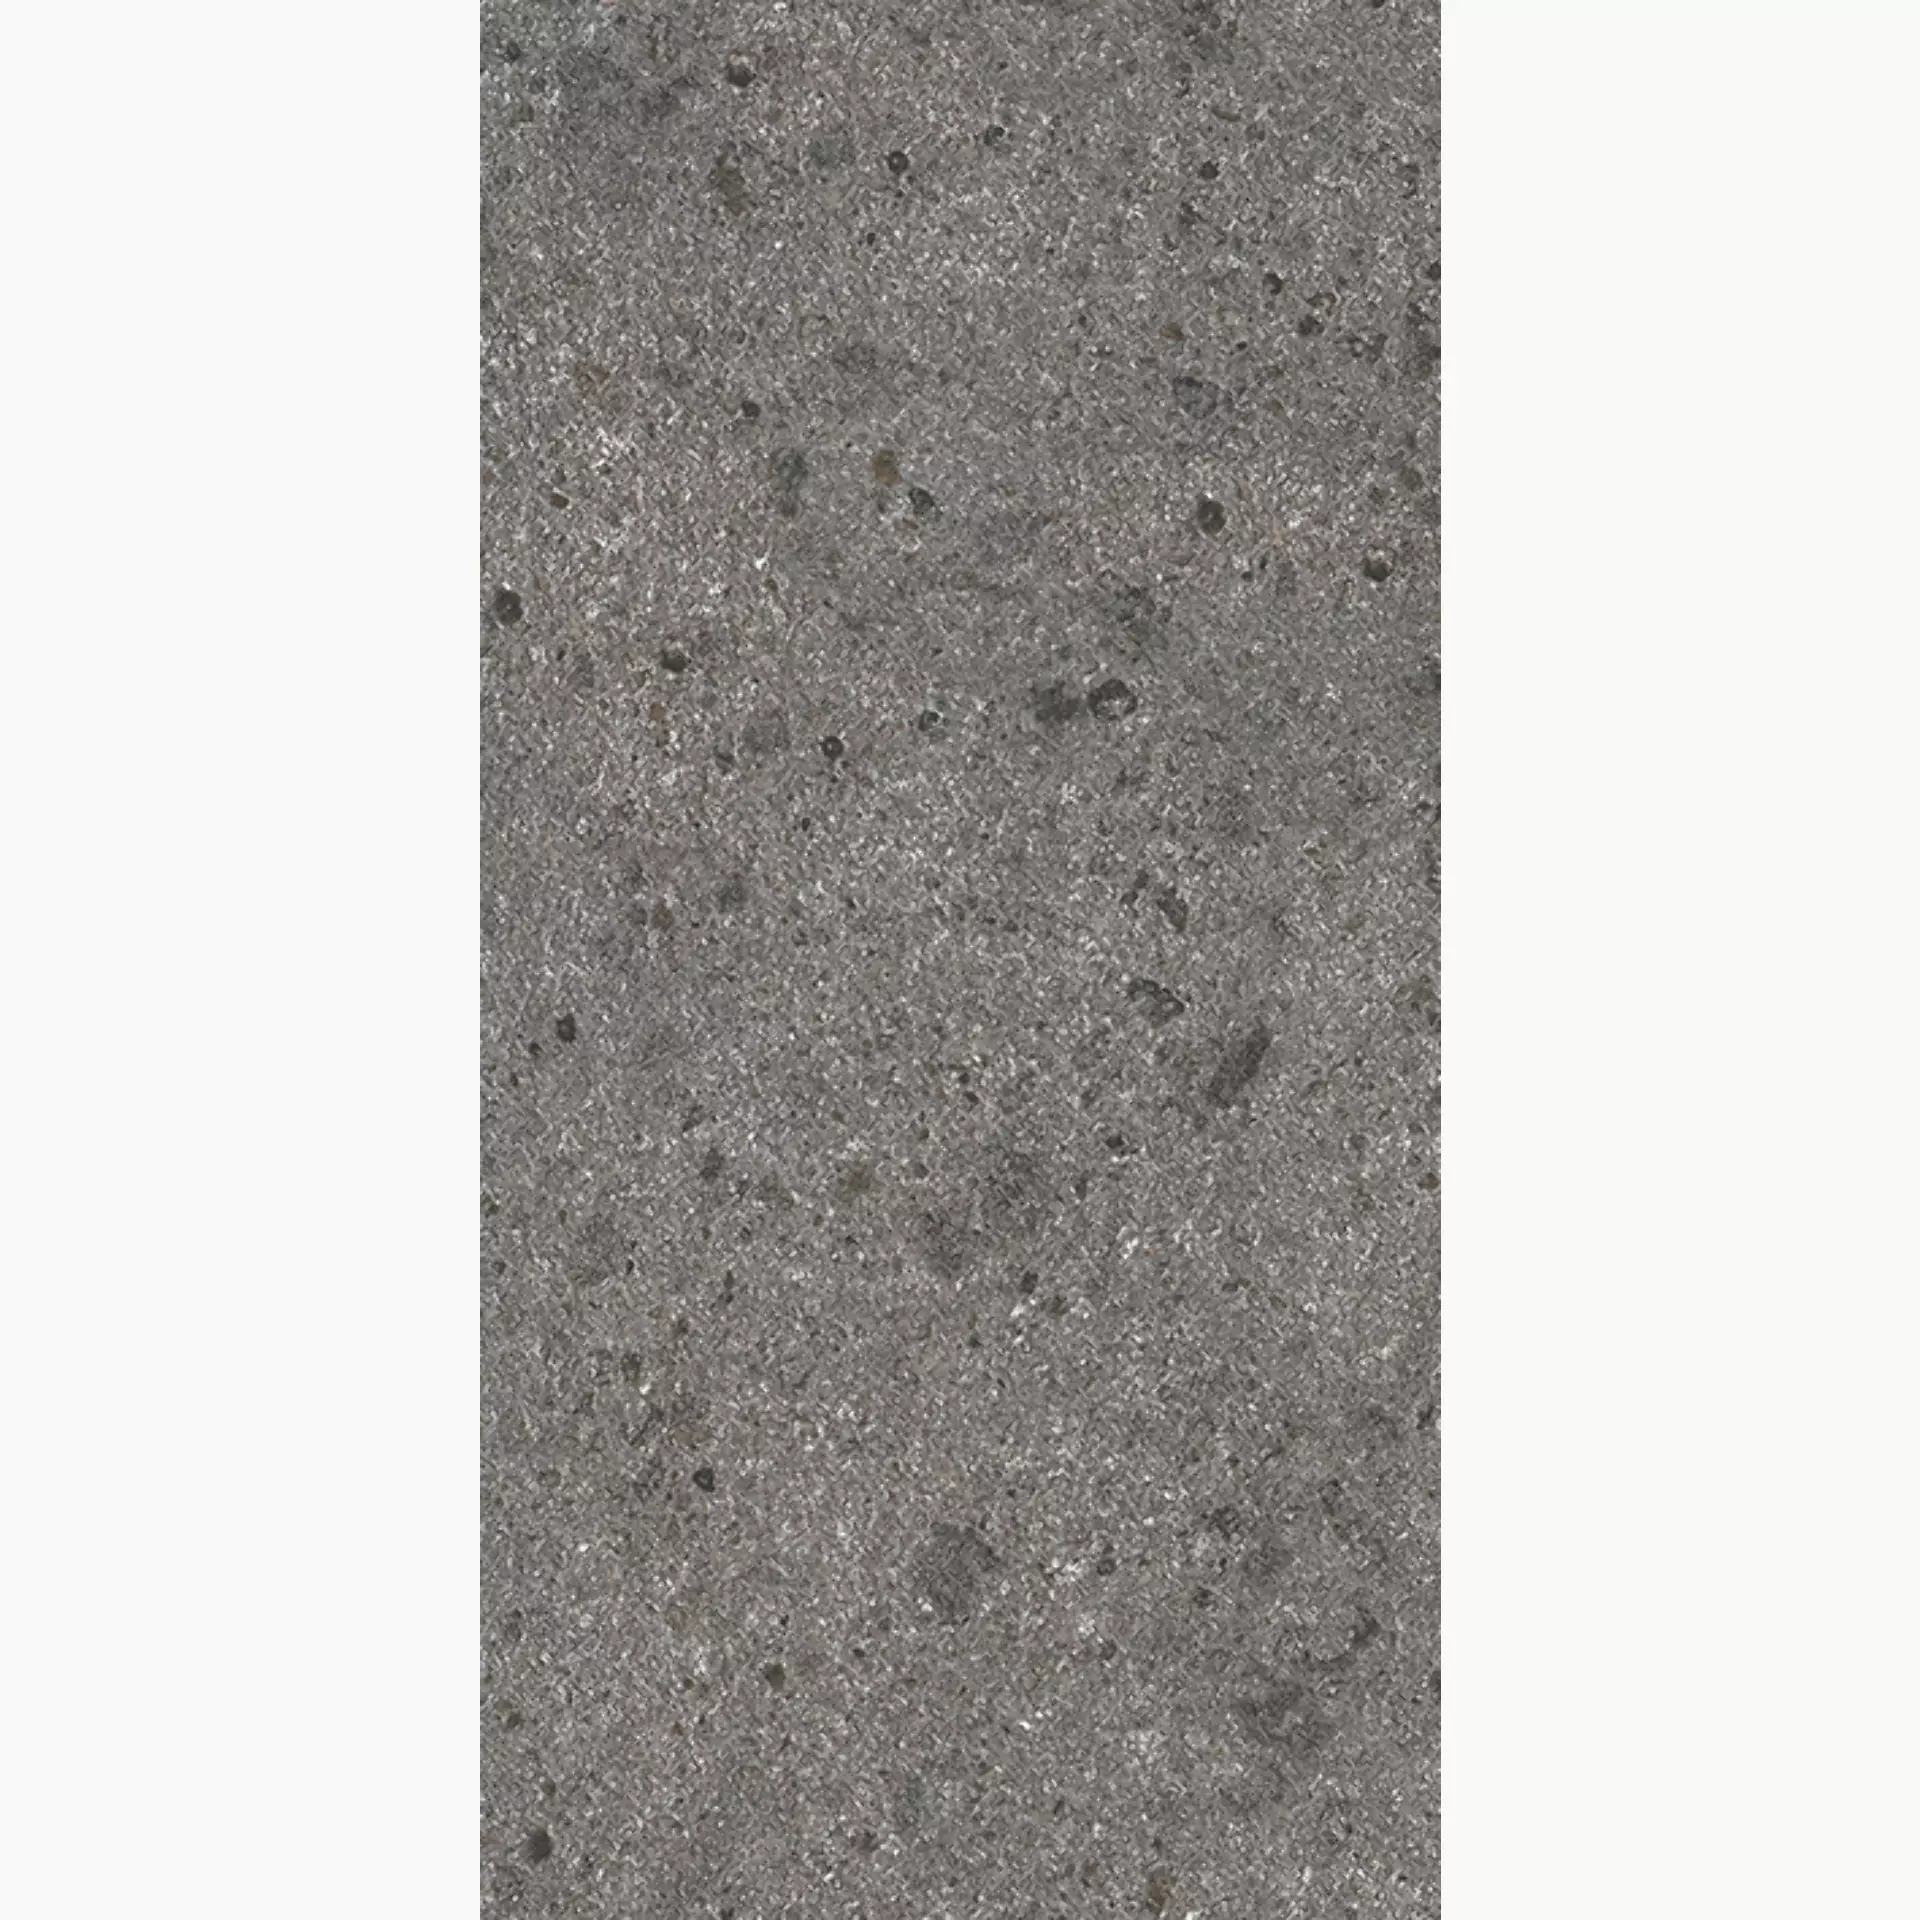 Wandfliese,Bodenfliese Villeroy & Boch Aberdeen Slate Grey Matt Slate Grey 2576-SB90 matt 30x60cm rektifiziert 10mm